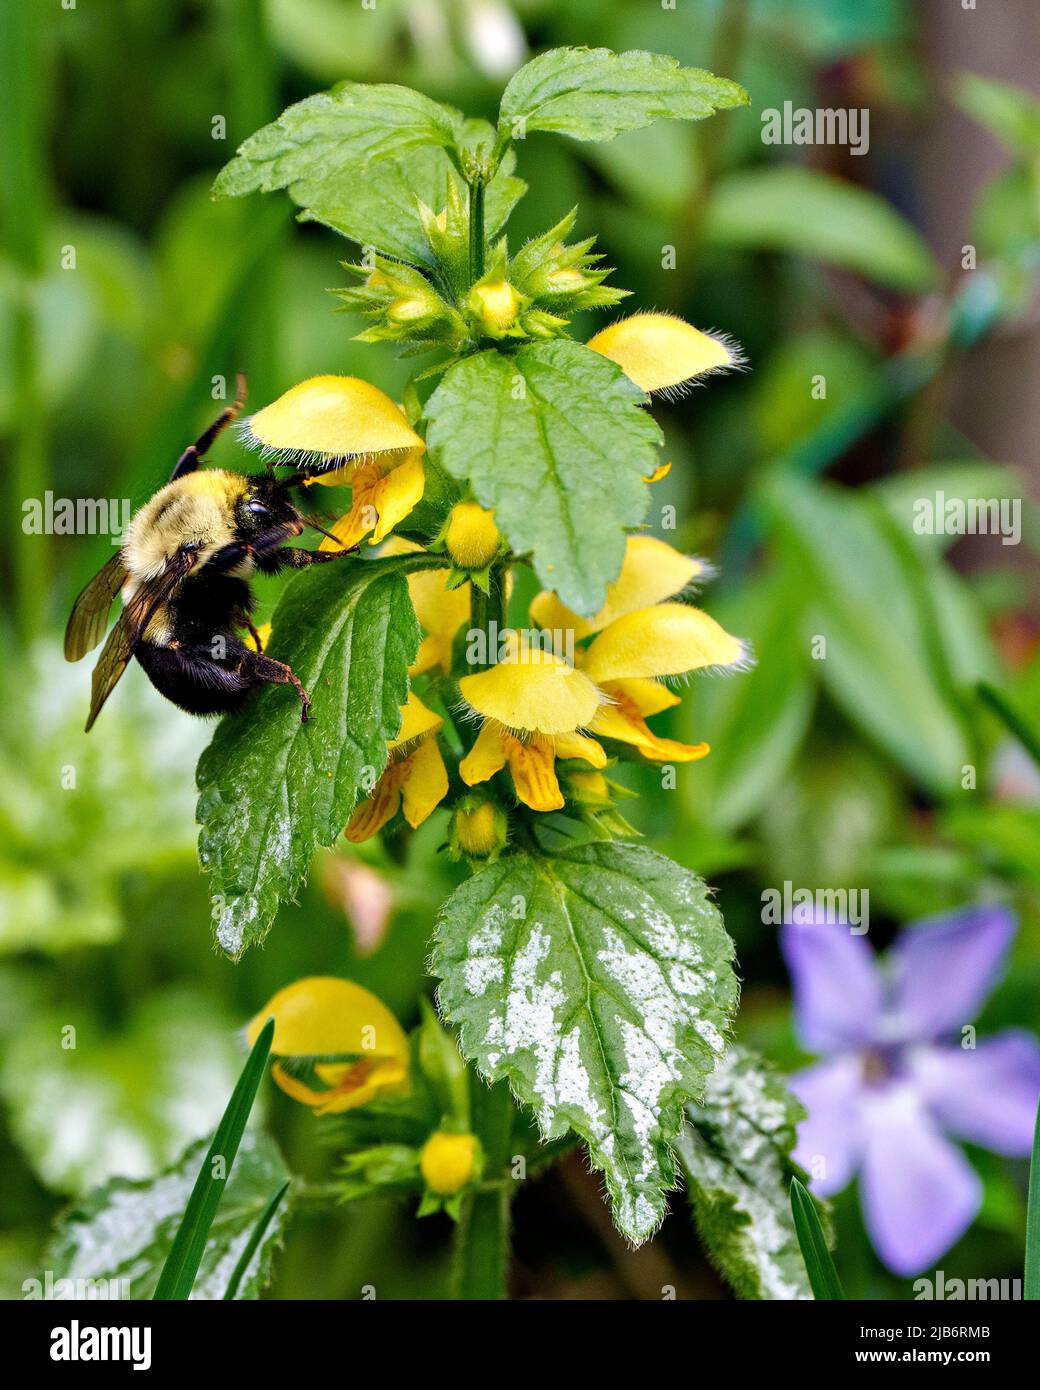 Le bourdon à ceinture brune recueille le nectar d'une fleur jaune avec un feuillage et un arrière-plan flou dans son environnement et son habitat. Abeille image et photo. Banque D'Images